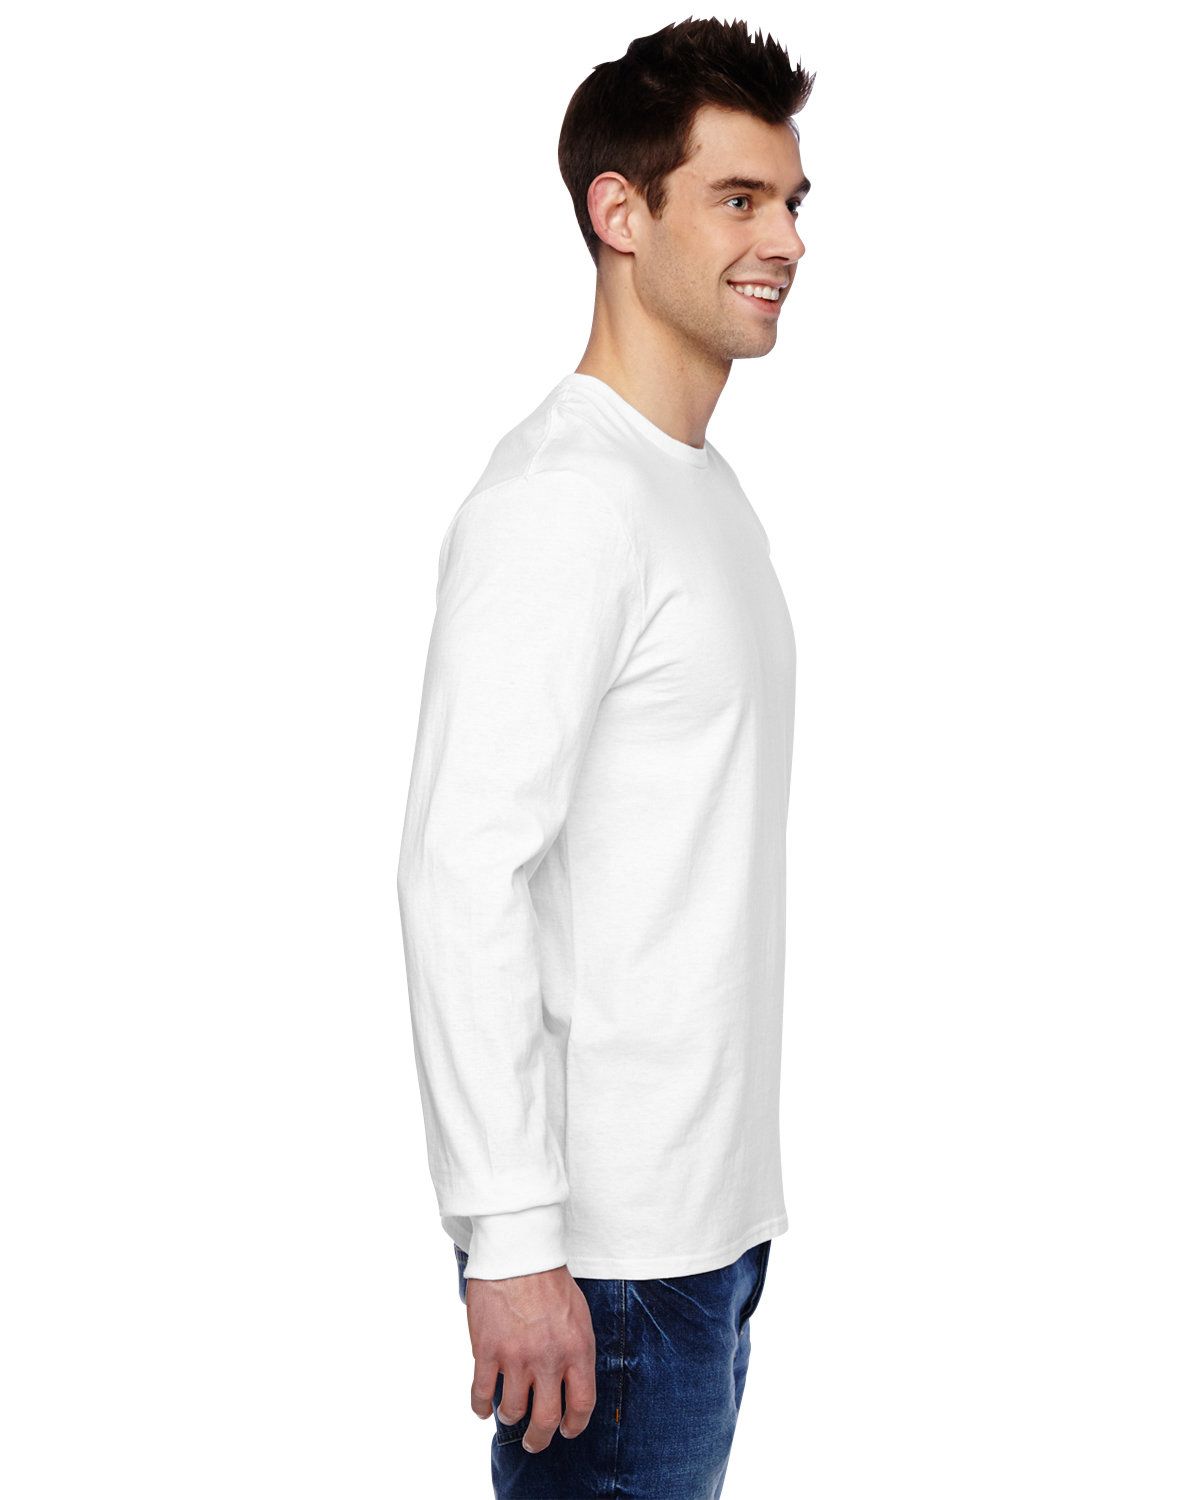 Fruit of the Loom 4.7 oz SFLR 100% Sofspun Cotton Jersey Long-Sleeve T-Shirt